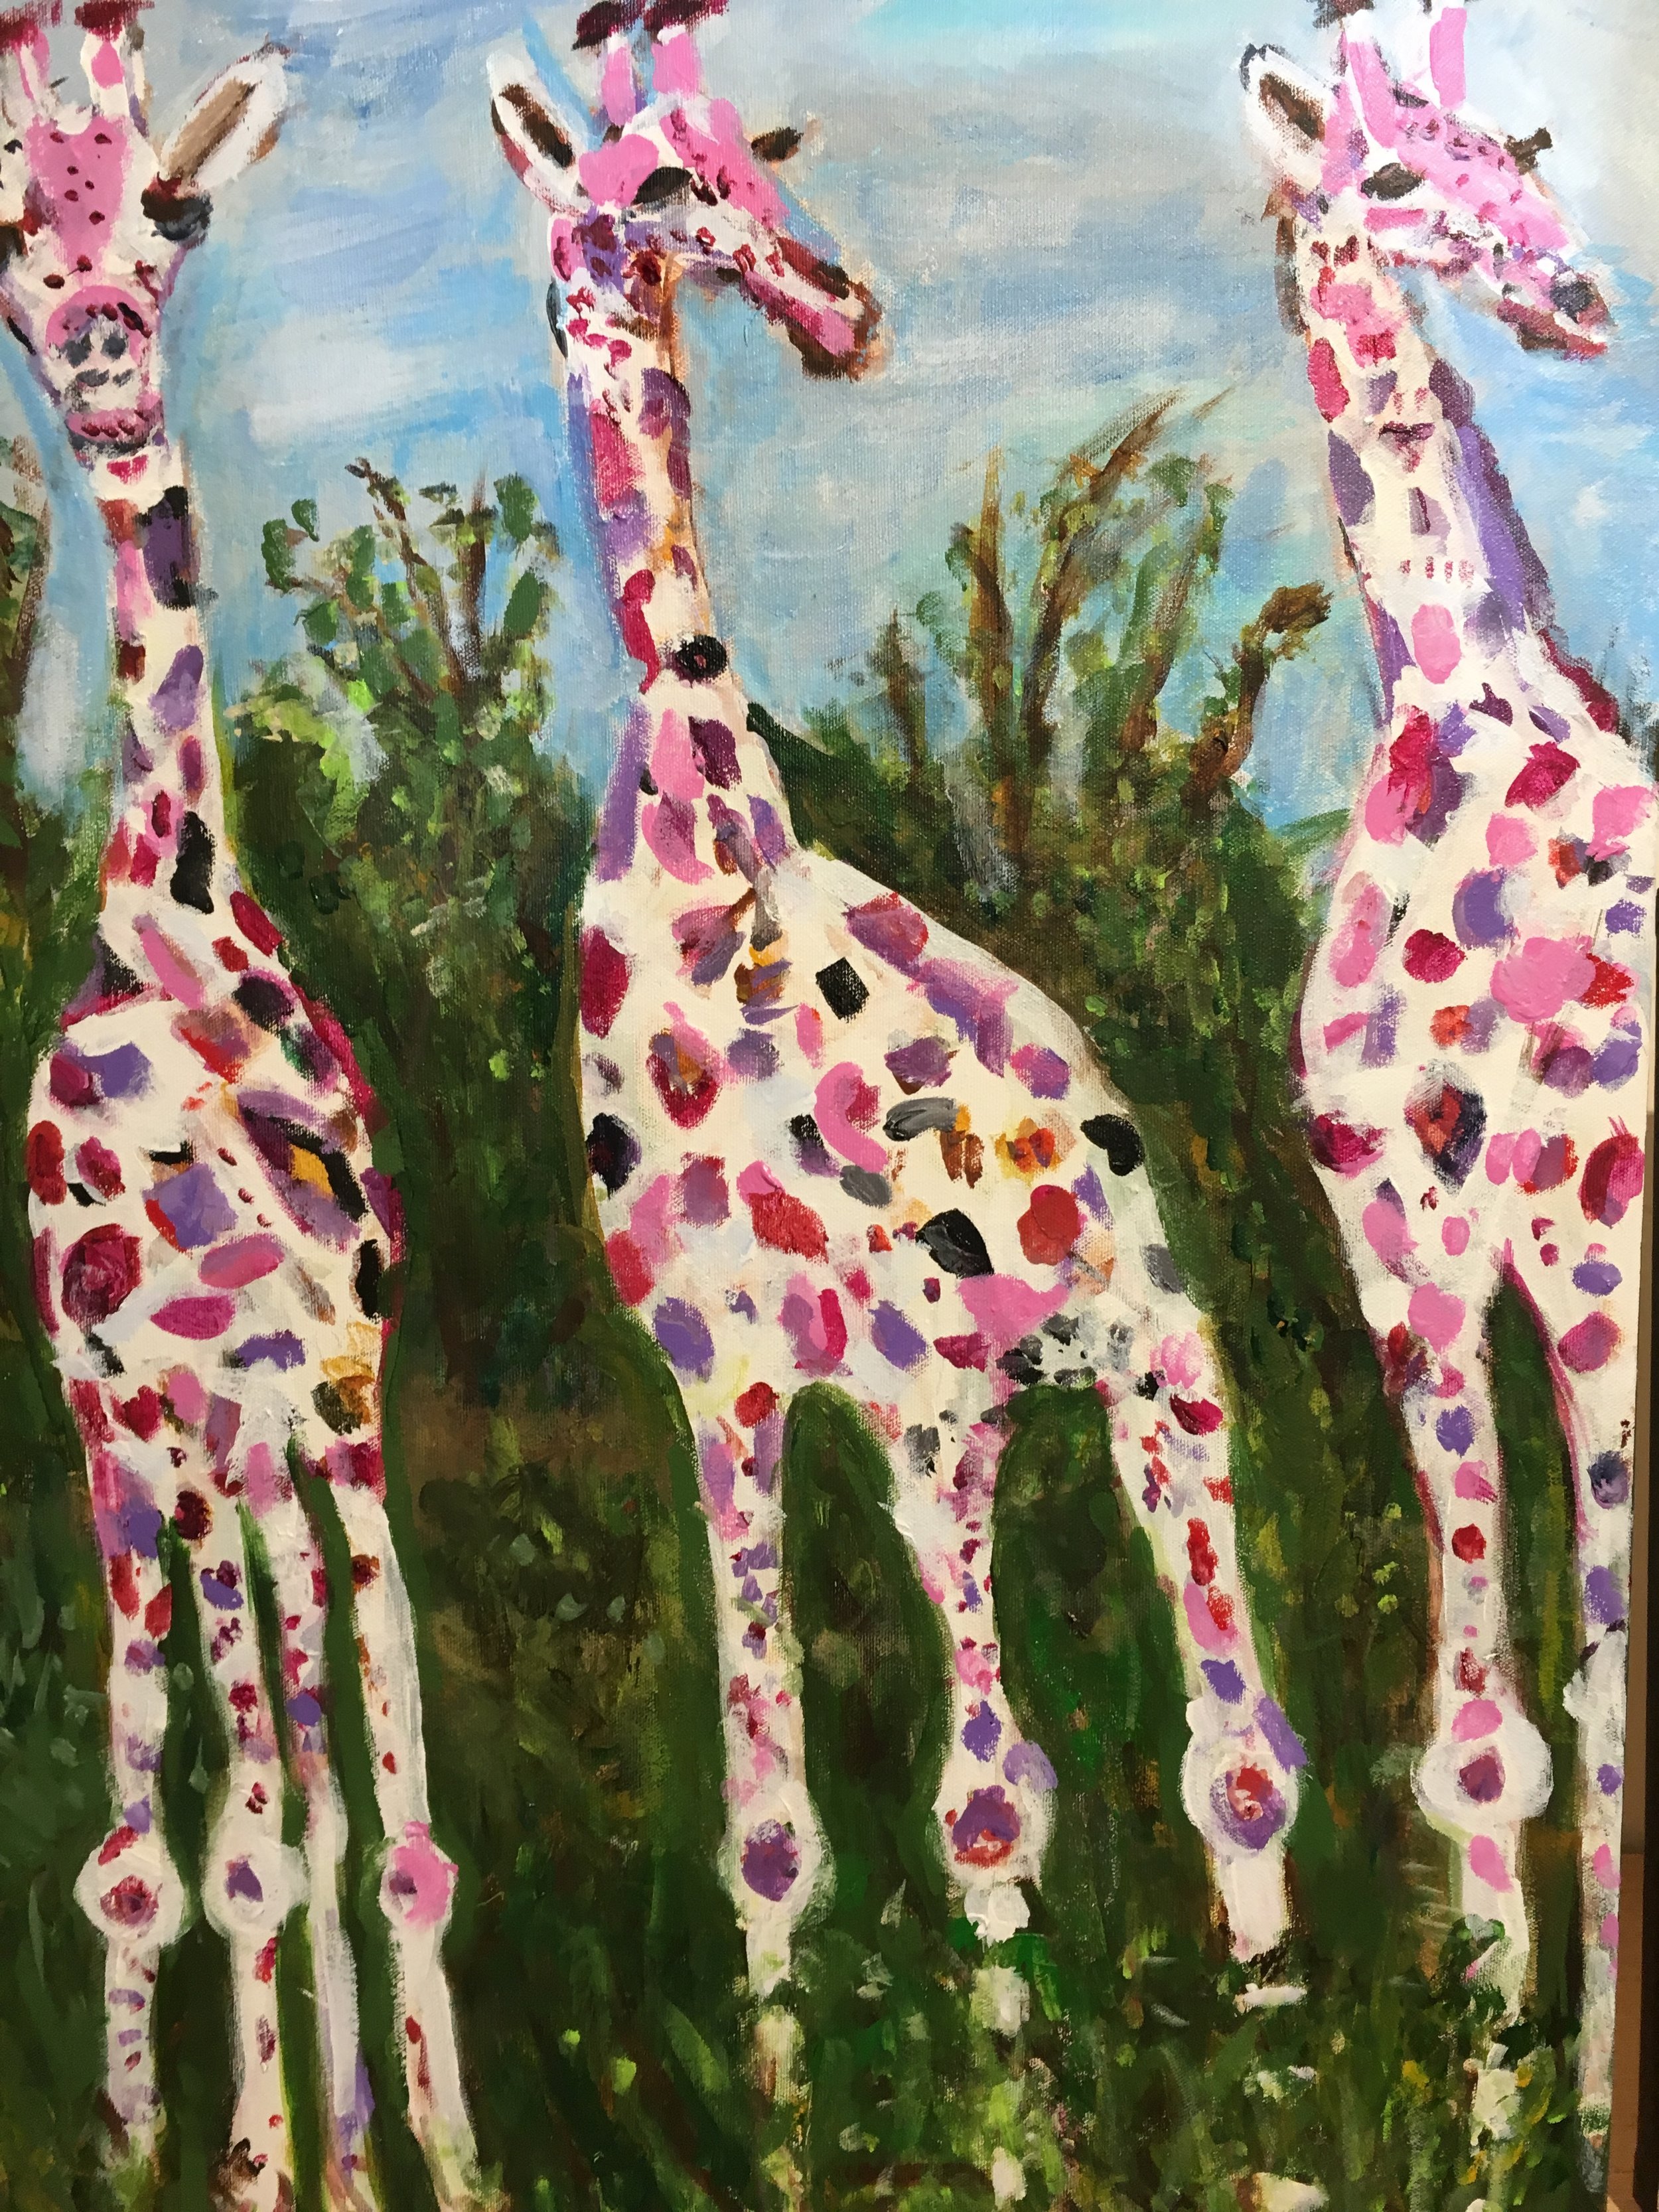 Three Dreamy Giraffes